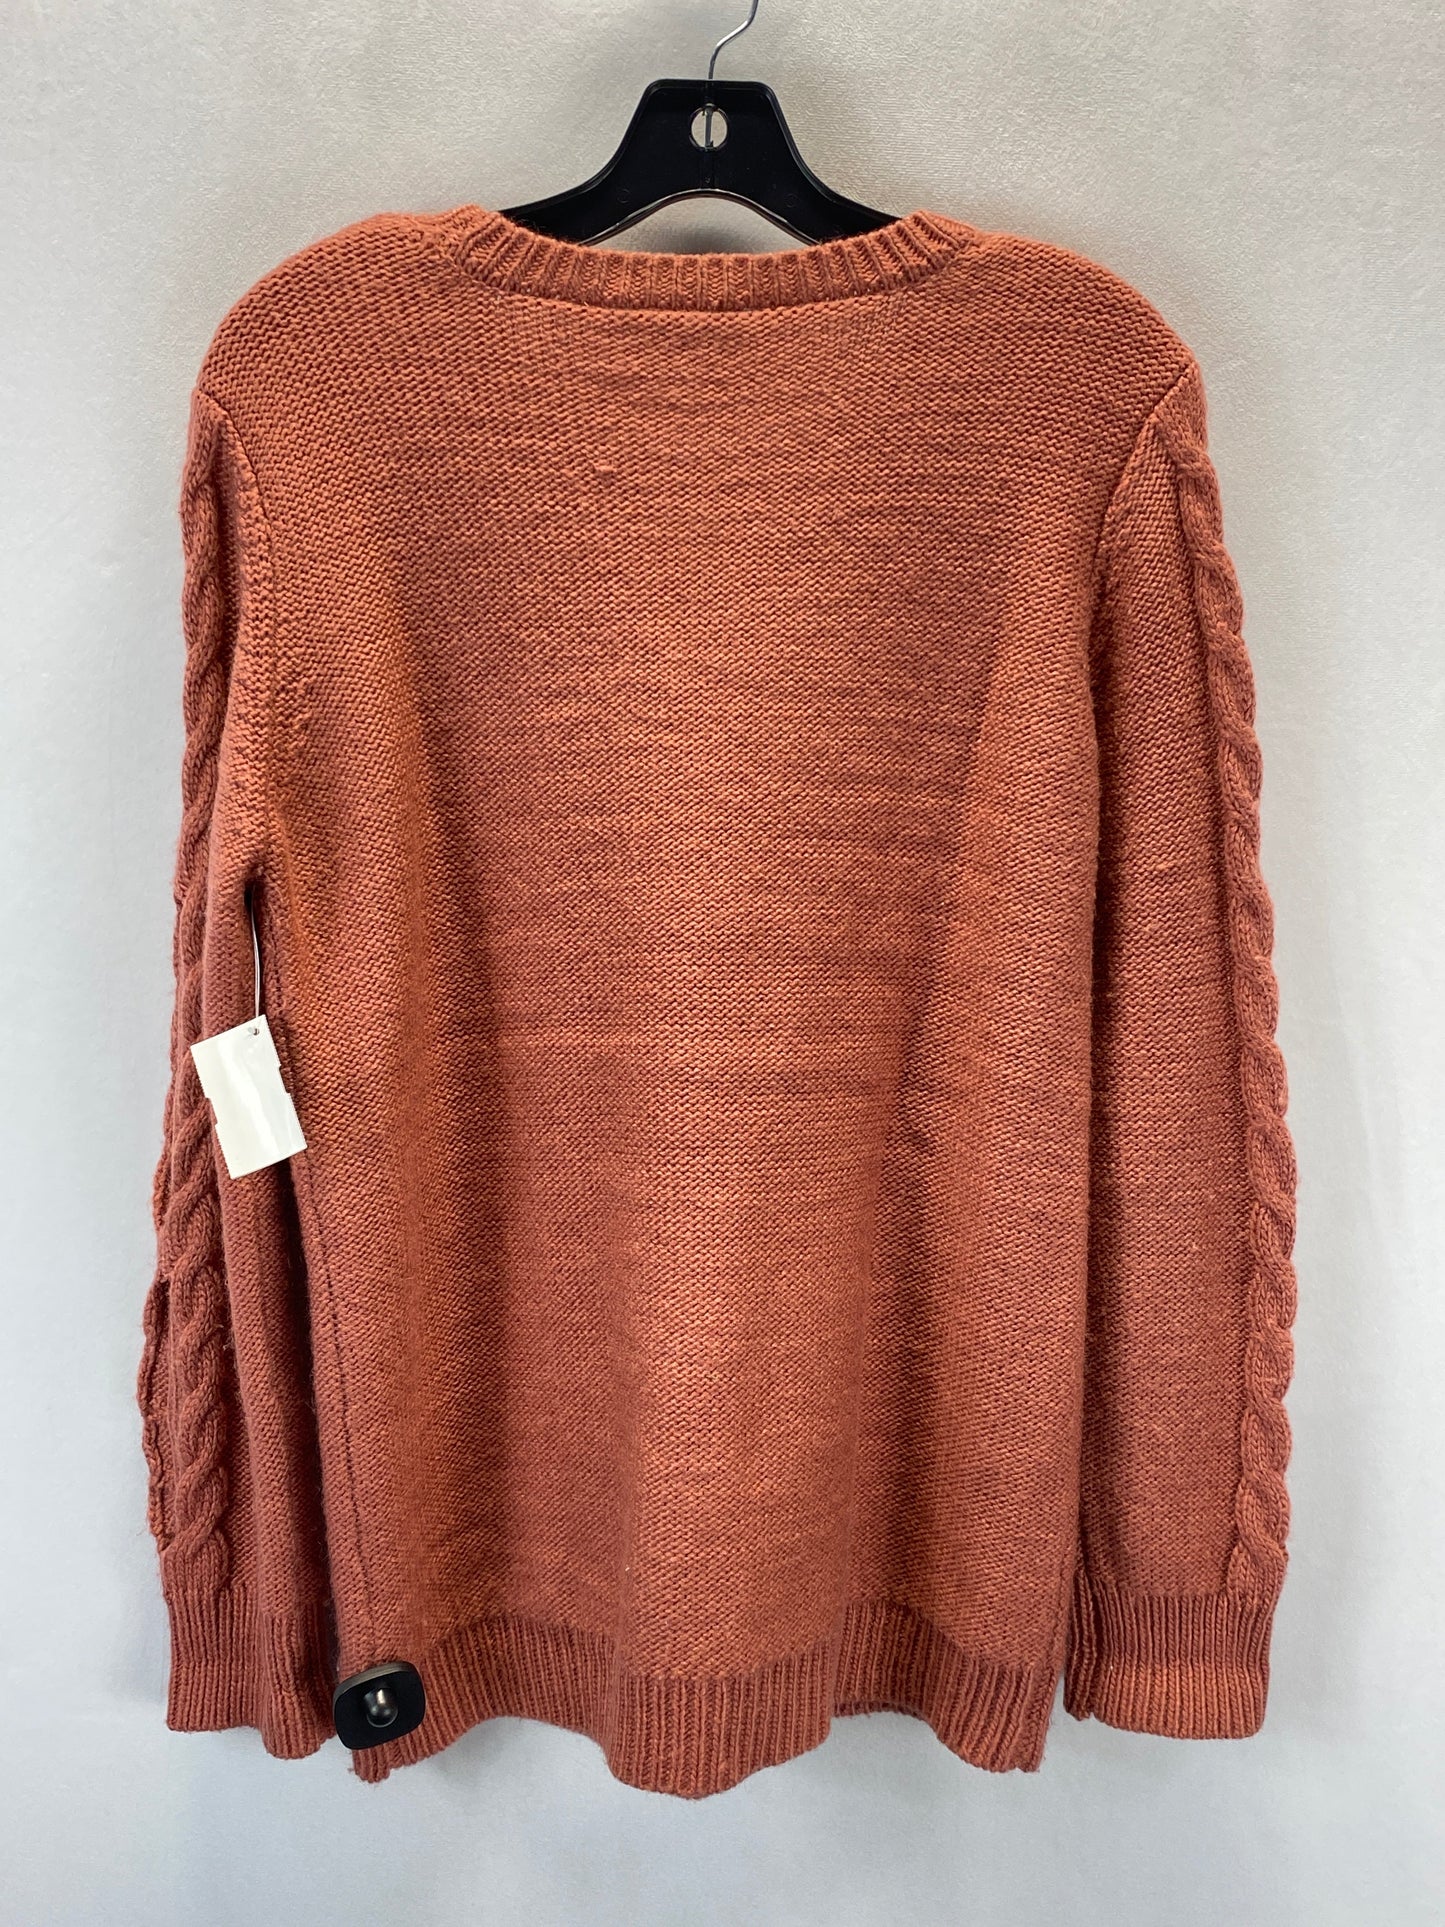 Sweater By Jack By Bb Dakota  Size: S